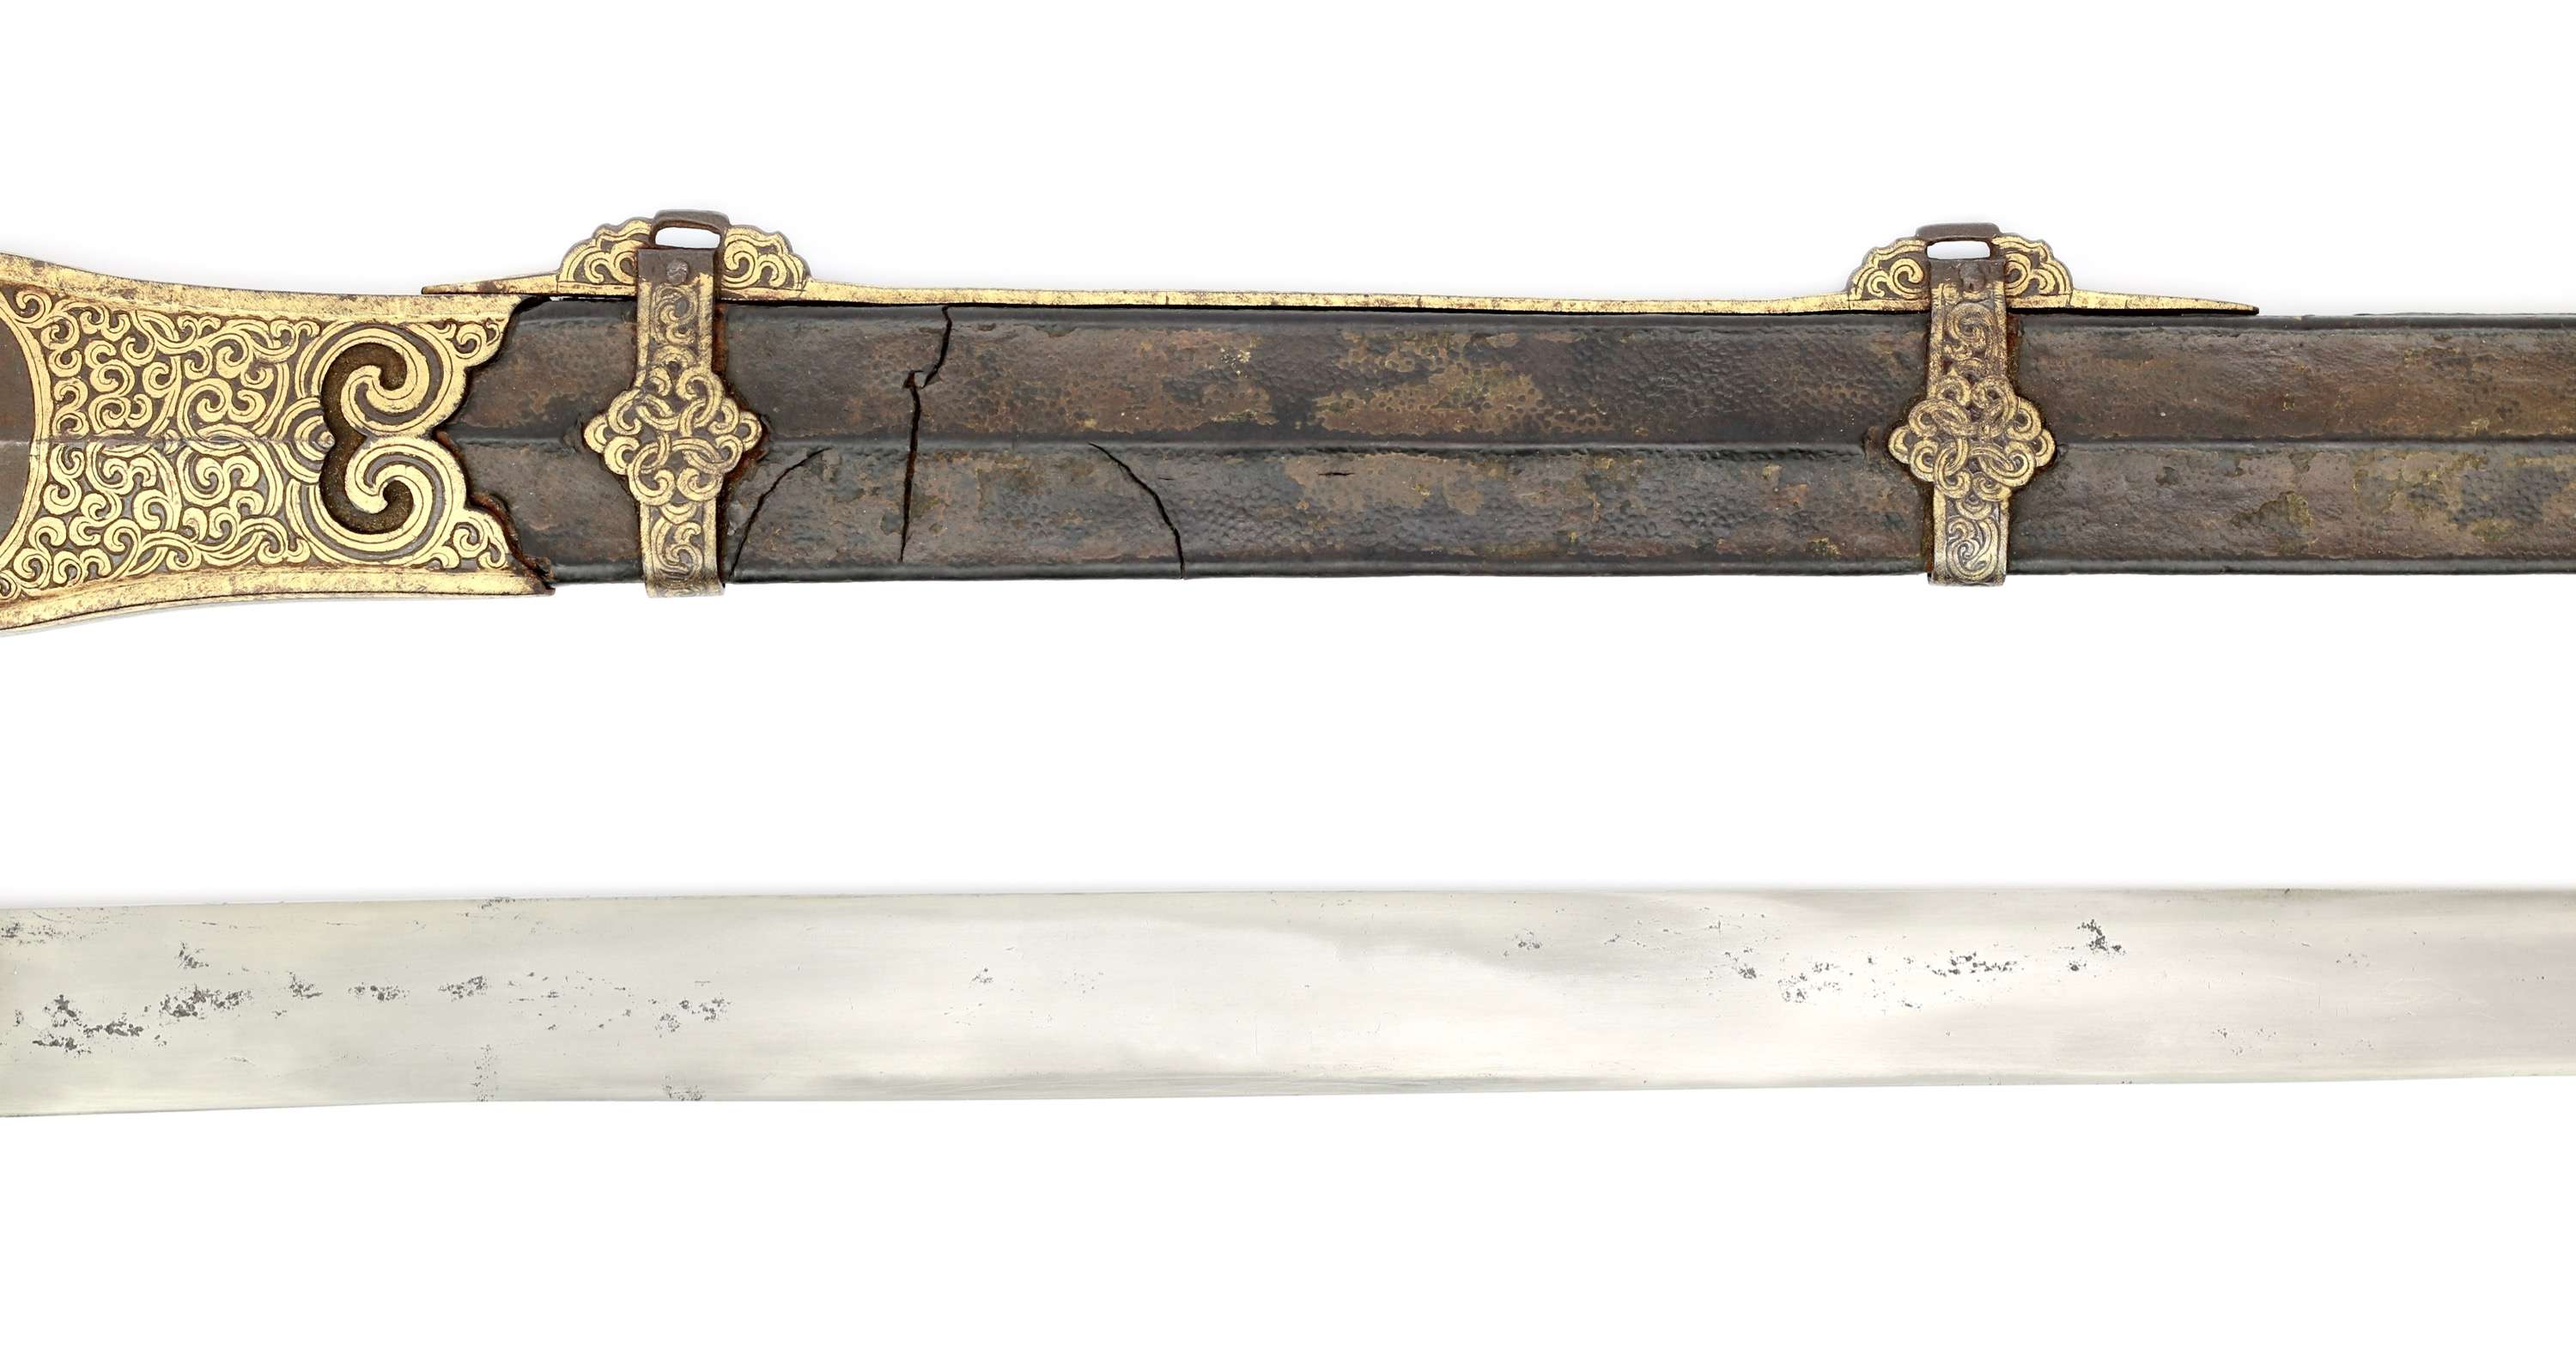 A rare Jinchuan sword